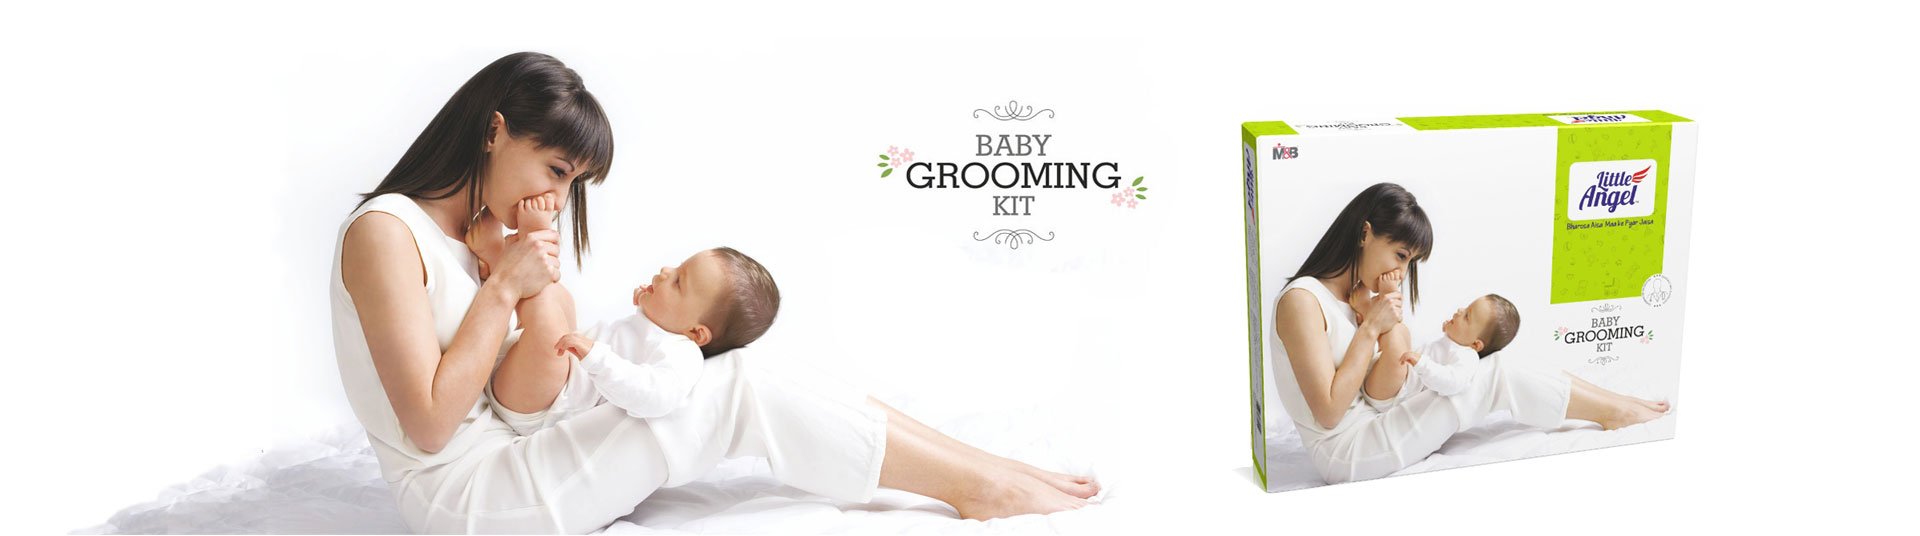 Baby Grooming Kit, Baby Grooming Kit :: Little Angel